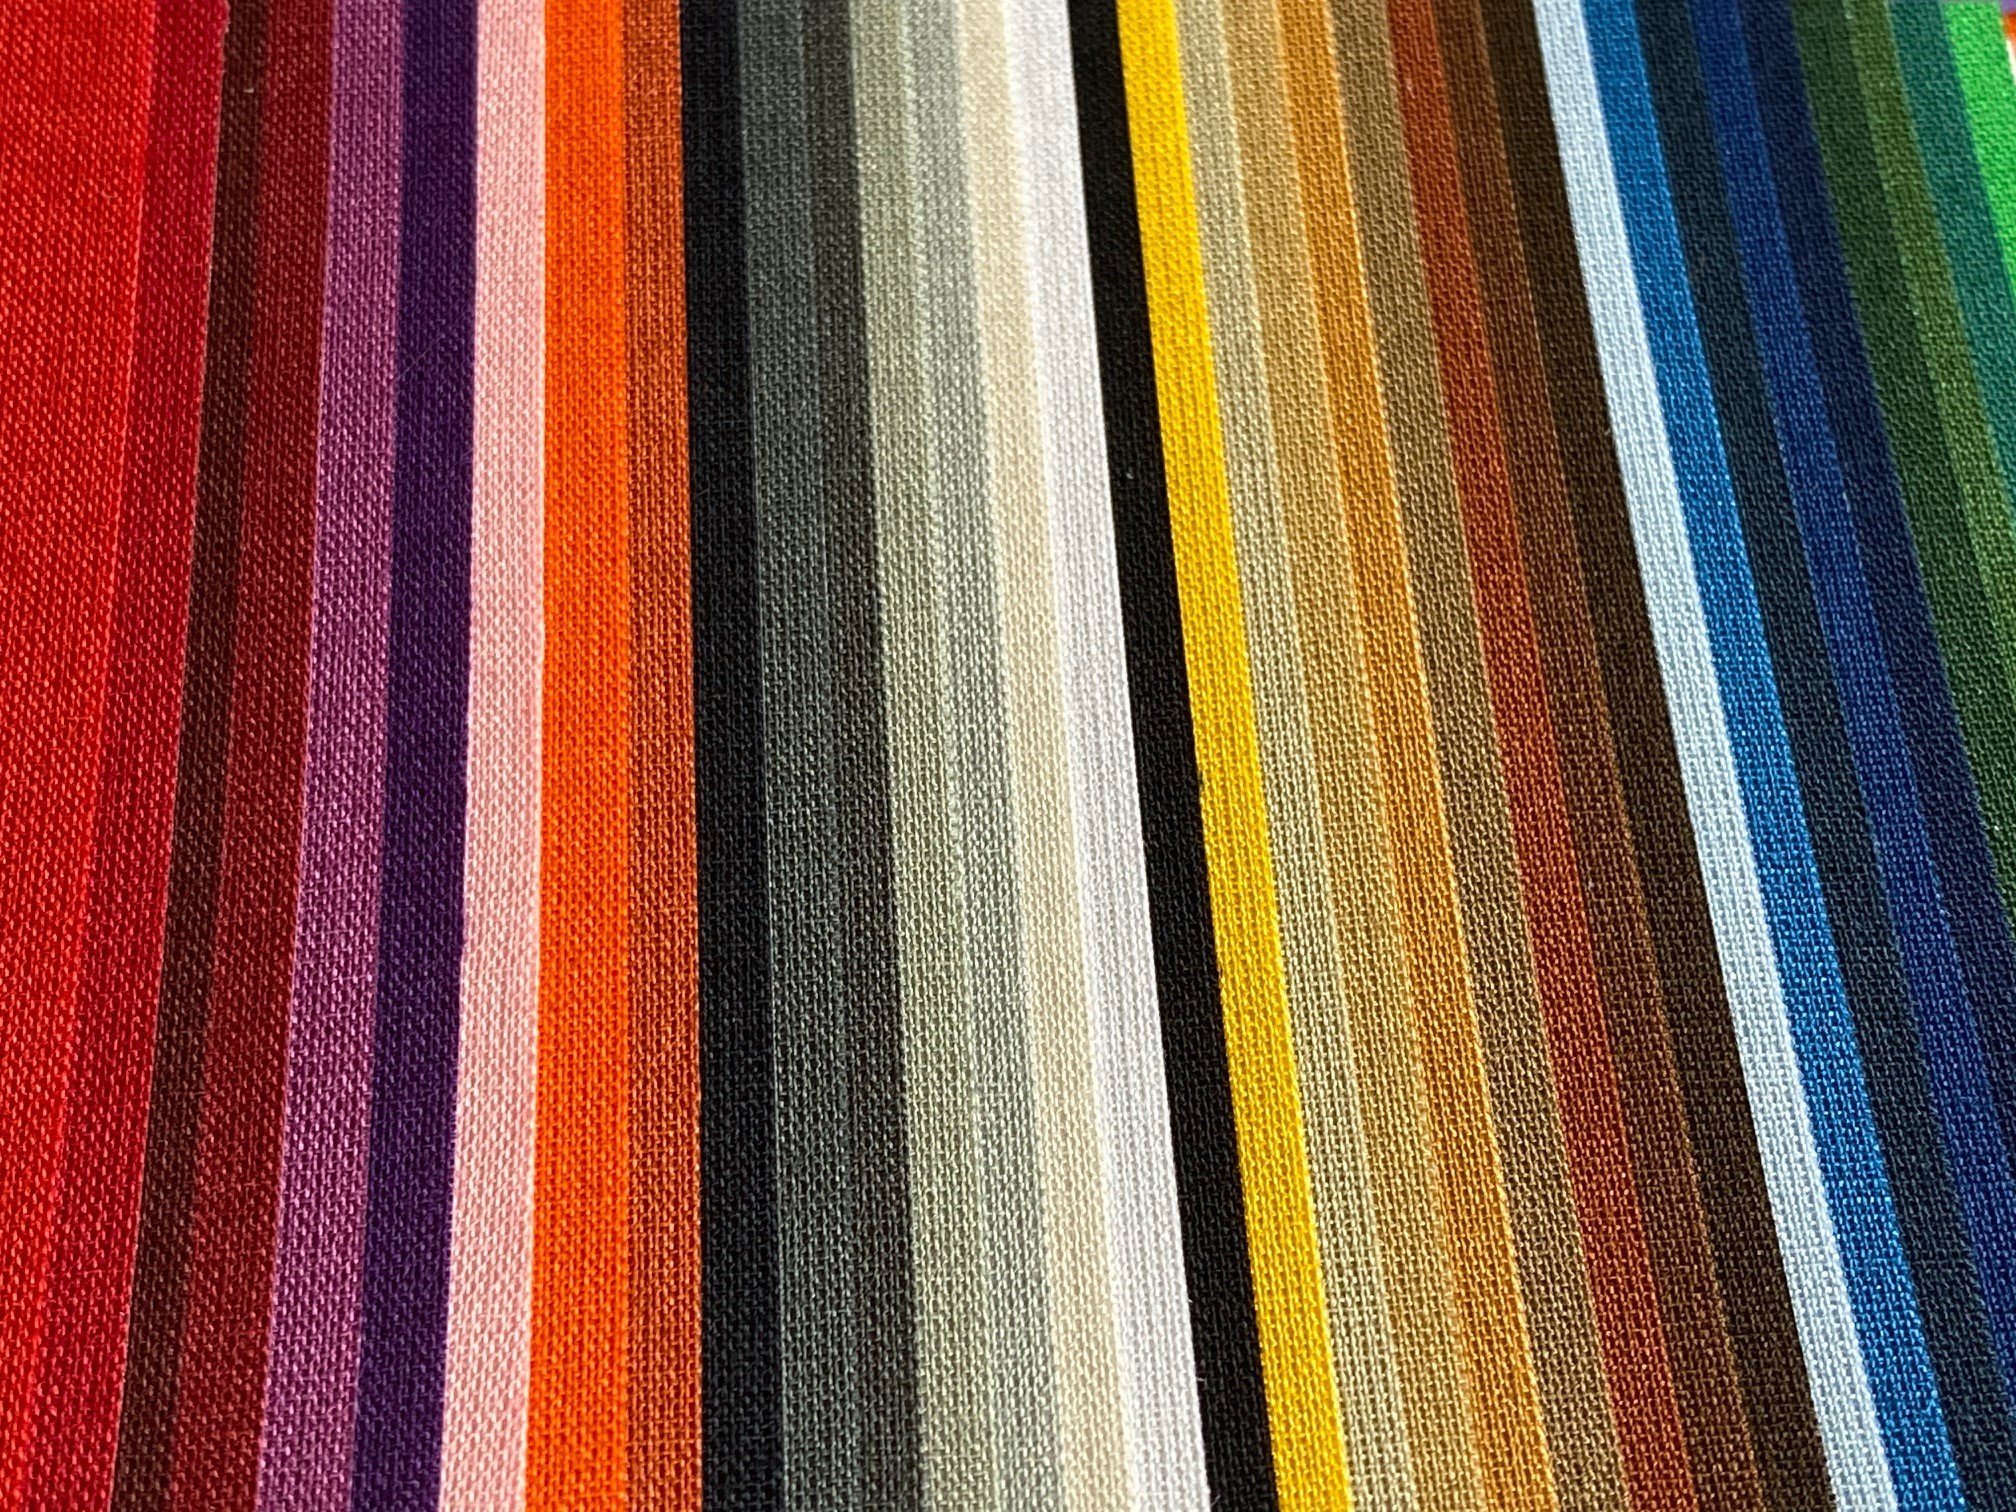 KAISERLICHE | Imperial ist eine zarte, klassische Leinwand in einer breiten Palette von Farben. Die Verwendung eignet sich für Exlibris und beschichtete Abdeckungen.